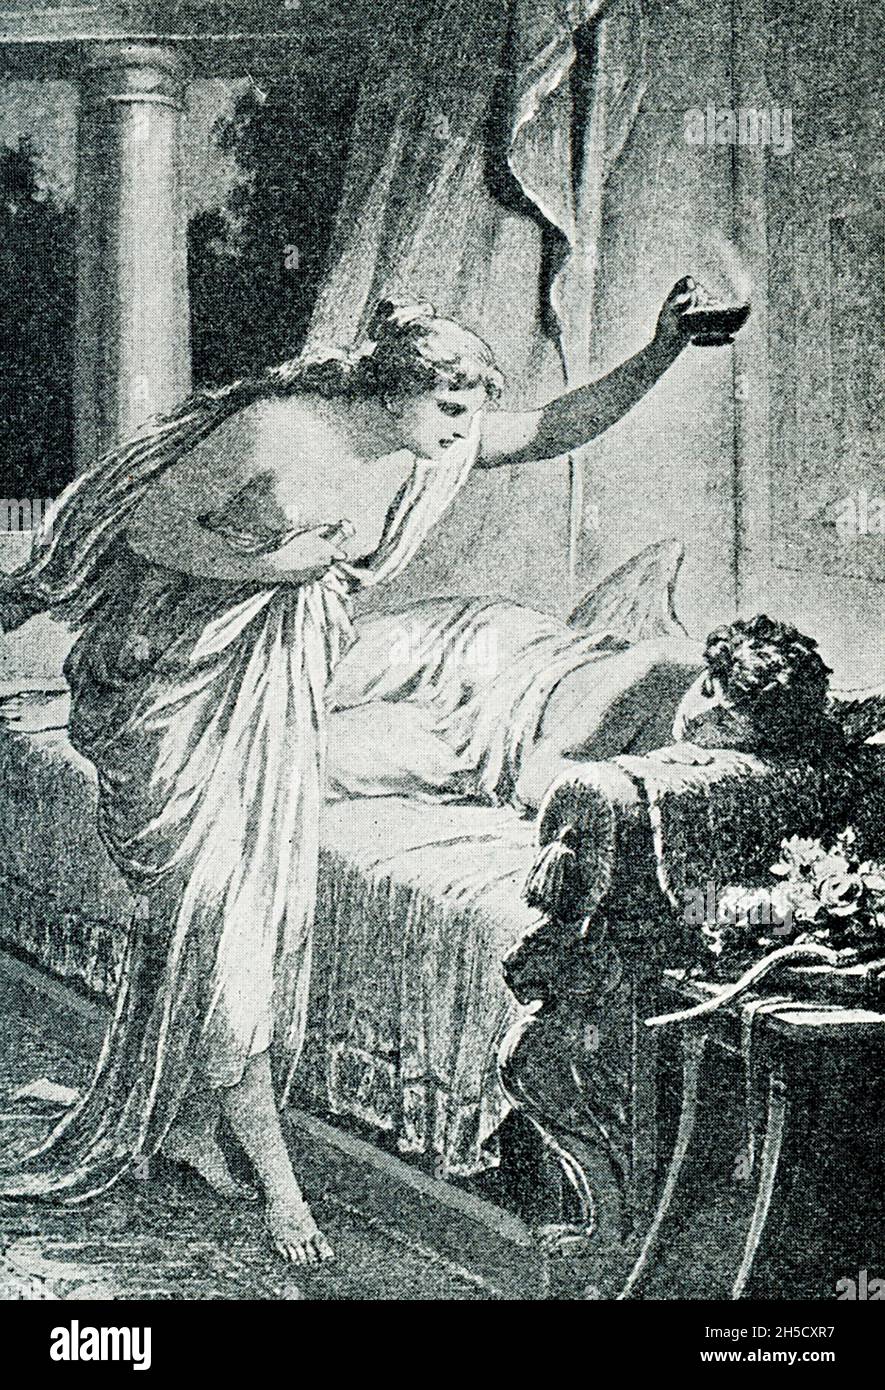 Secondo la mitologia greca e romana, Cupido (Eros ai Greci) era il dio dell'amore. Sua madre, Venere (Afrodite), era gelosa di Psiche, una principessa mortale, e mandò Cupido a spararla con una freccia d'amore che le avrebbe fatto innamorarsi di una creatura orribile. Per caso, Cupid si è preso a pricciarsi così e ha invertito l'effetto su Psiche. Venere tentò senza successo di tenere separati i due. Infine, Cupido e Pysche furono lasciati sposare, e a Psiche fu concessa immortalità. Qui Pysche guarda Cuopid addormentato – il mito dice che una goccia della cera calda dalla candela cadde su Cupid, lo risvegliò, a Foto Stock